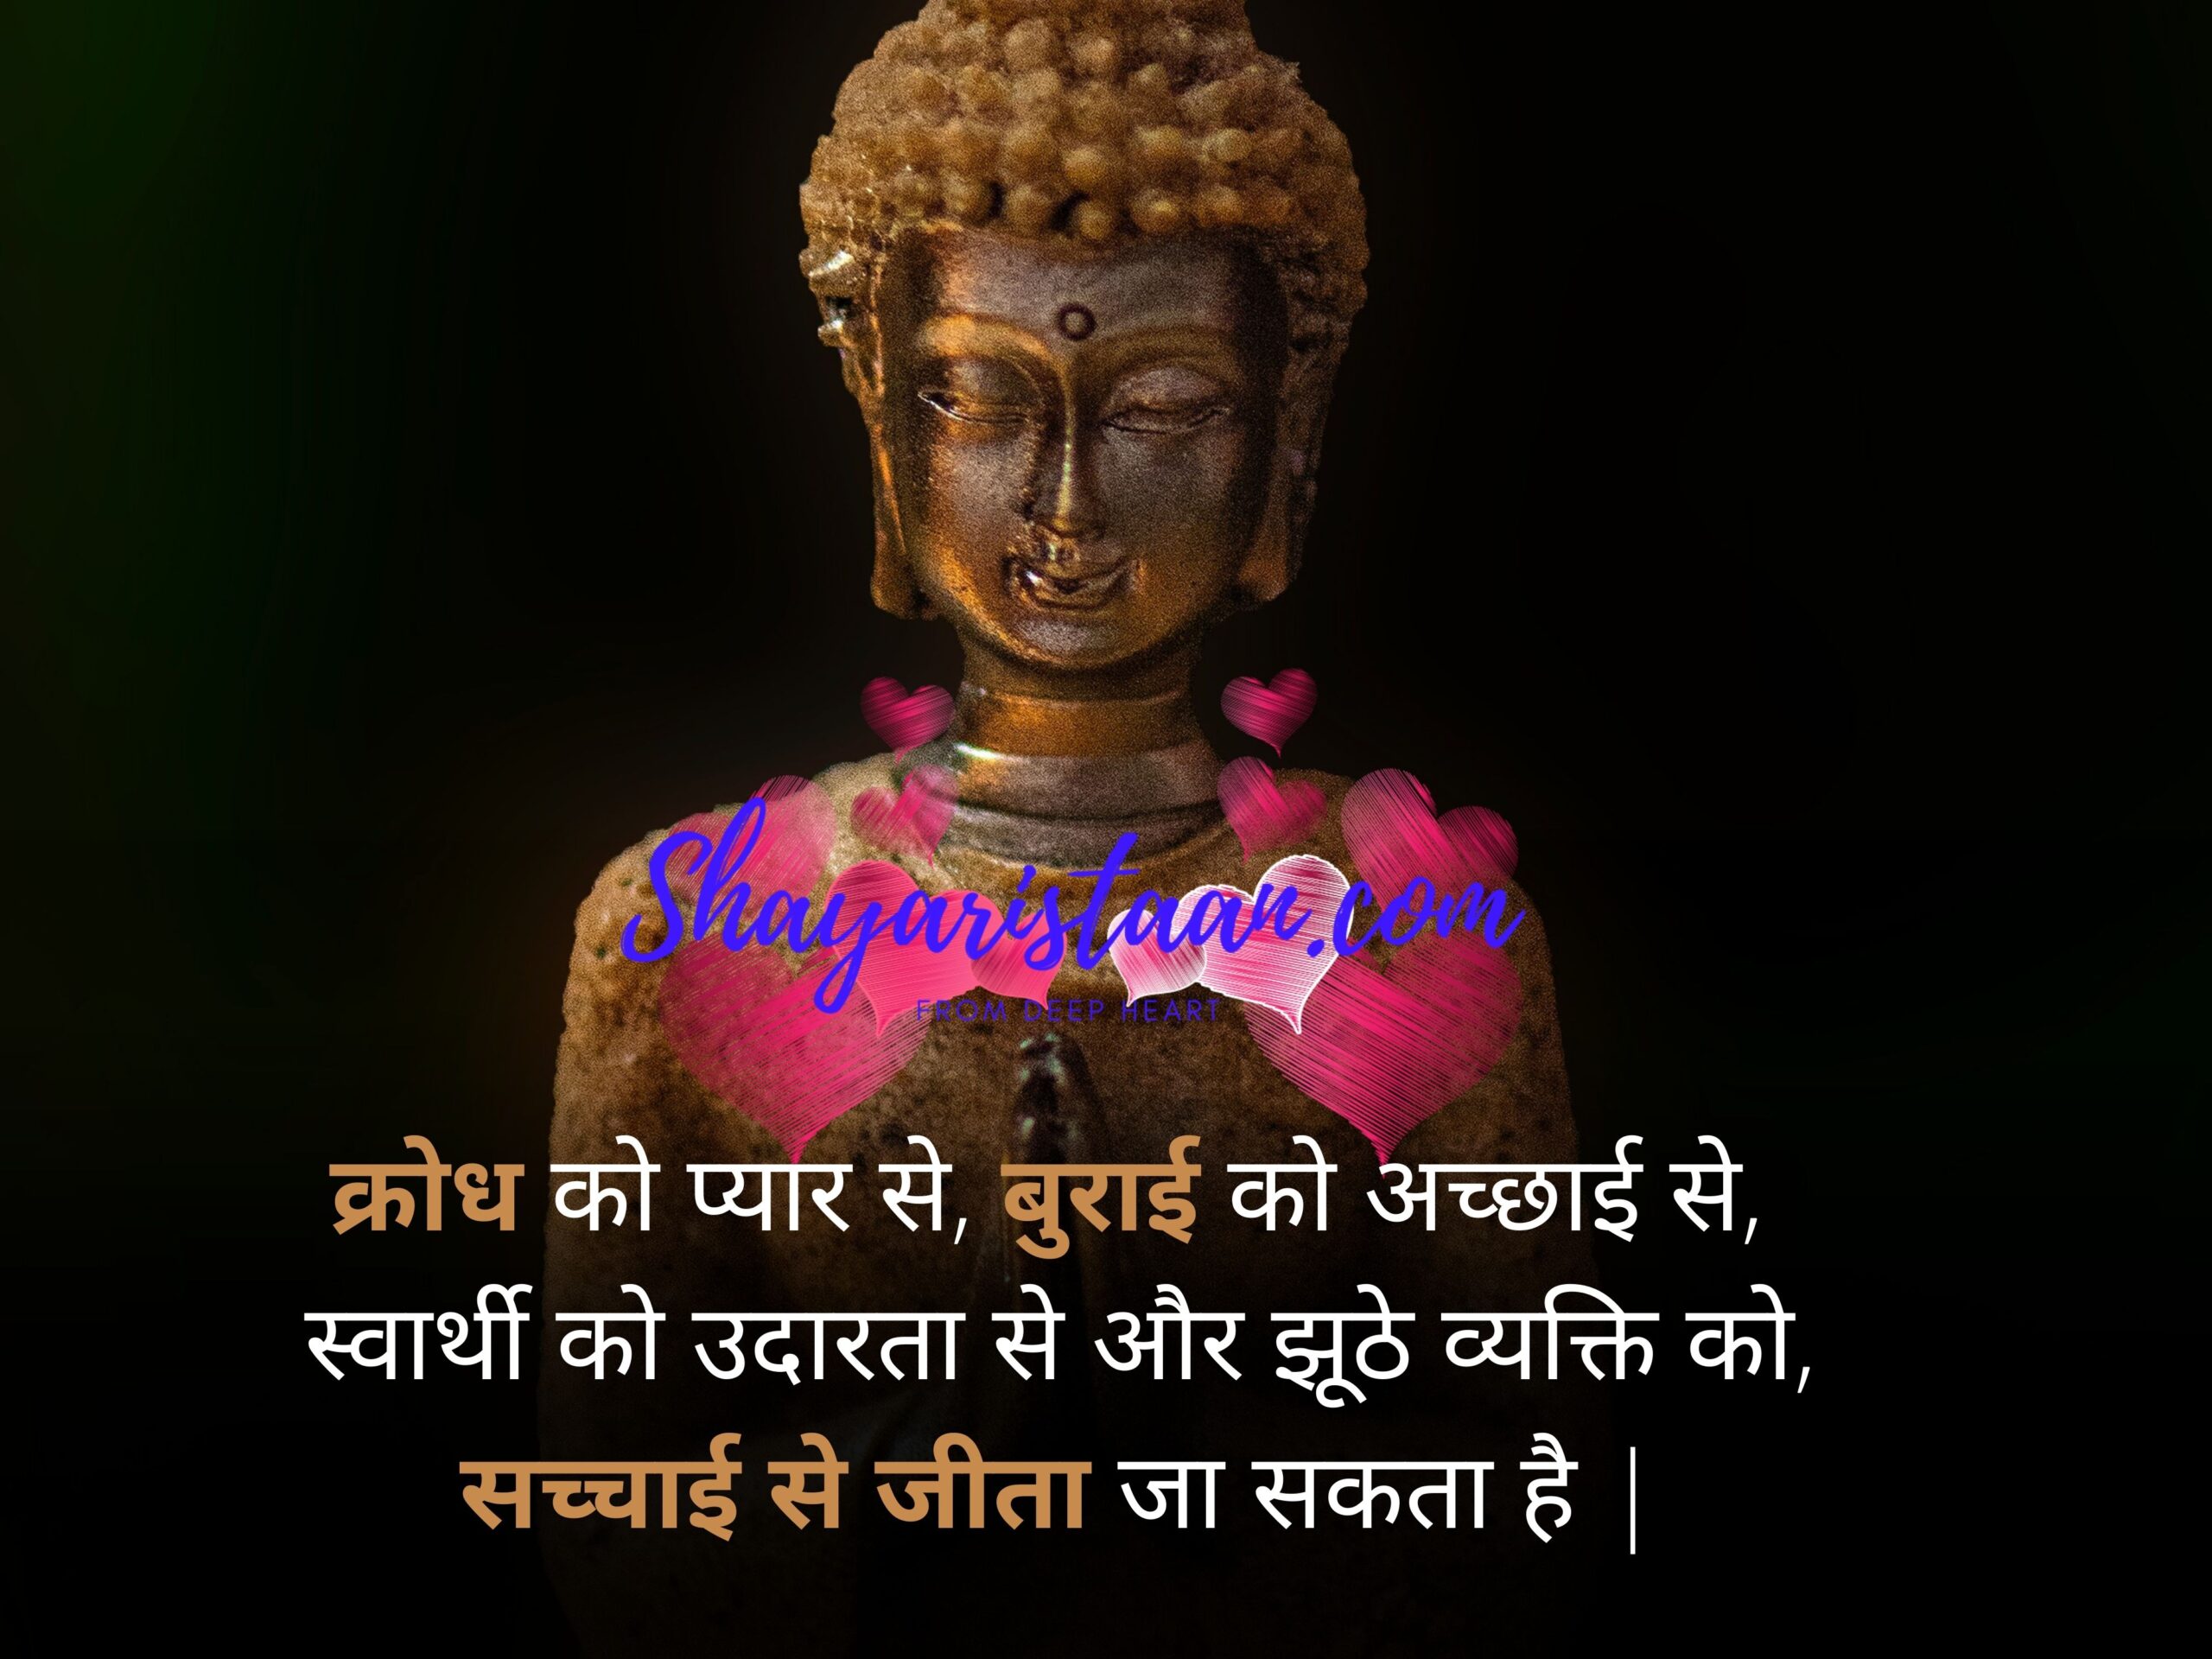  buddha quotes about life | क्रोध को प्यार से, बुराई को अच्छाई से,  स्वार्थी को उदारता से और झूठे व्यक्ति को, सच्चाई से जीता जा सकता है |